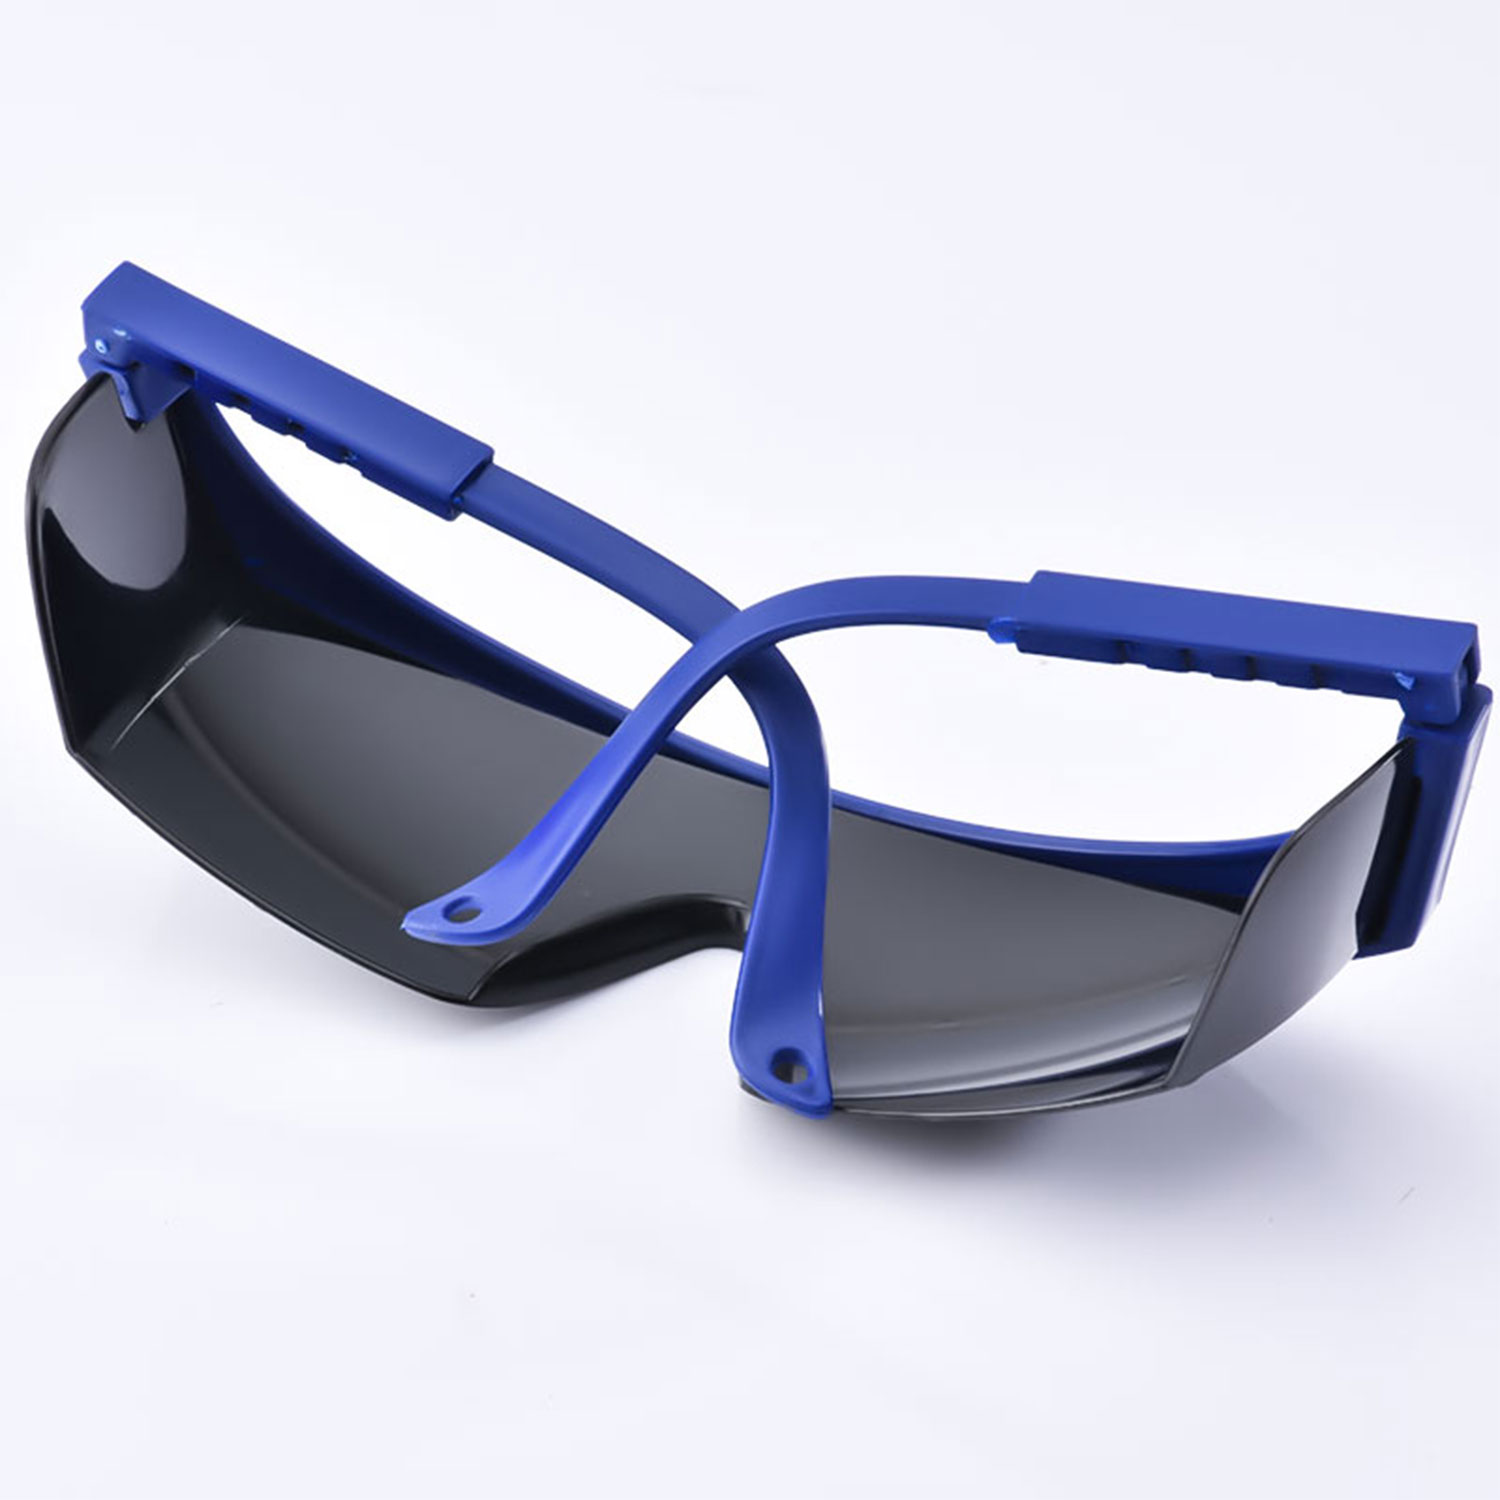 Готовые темные защитные очки для ПК KS102 Black